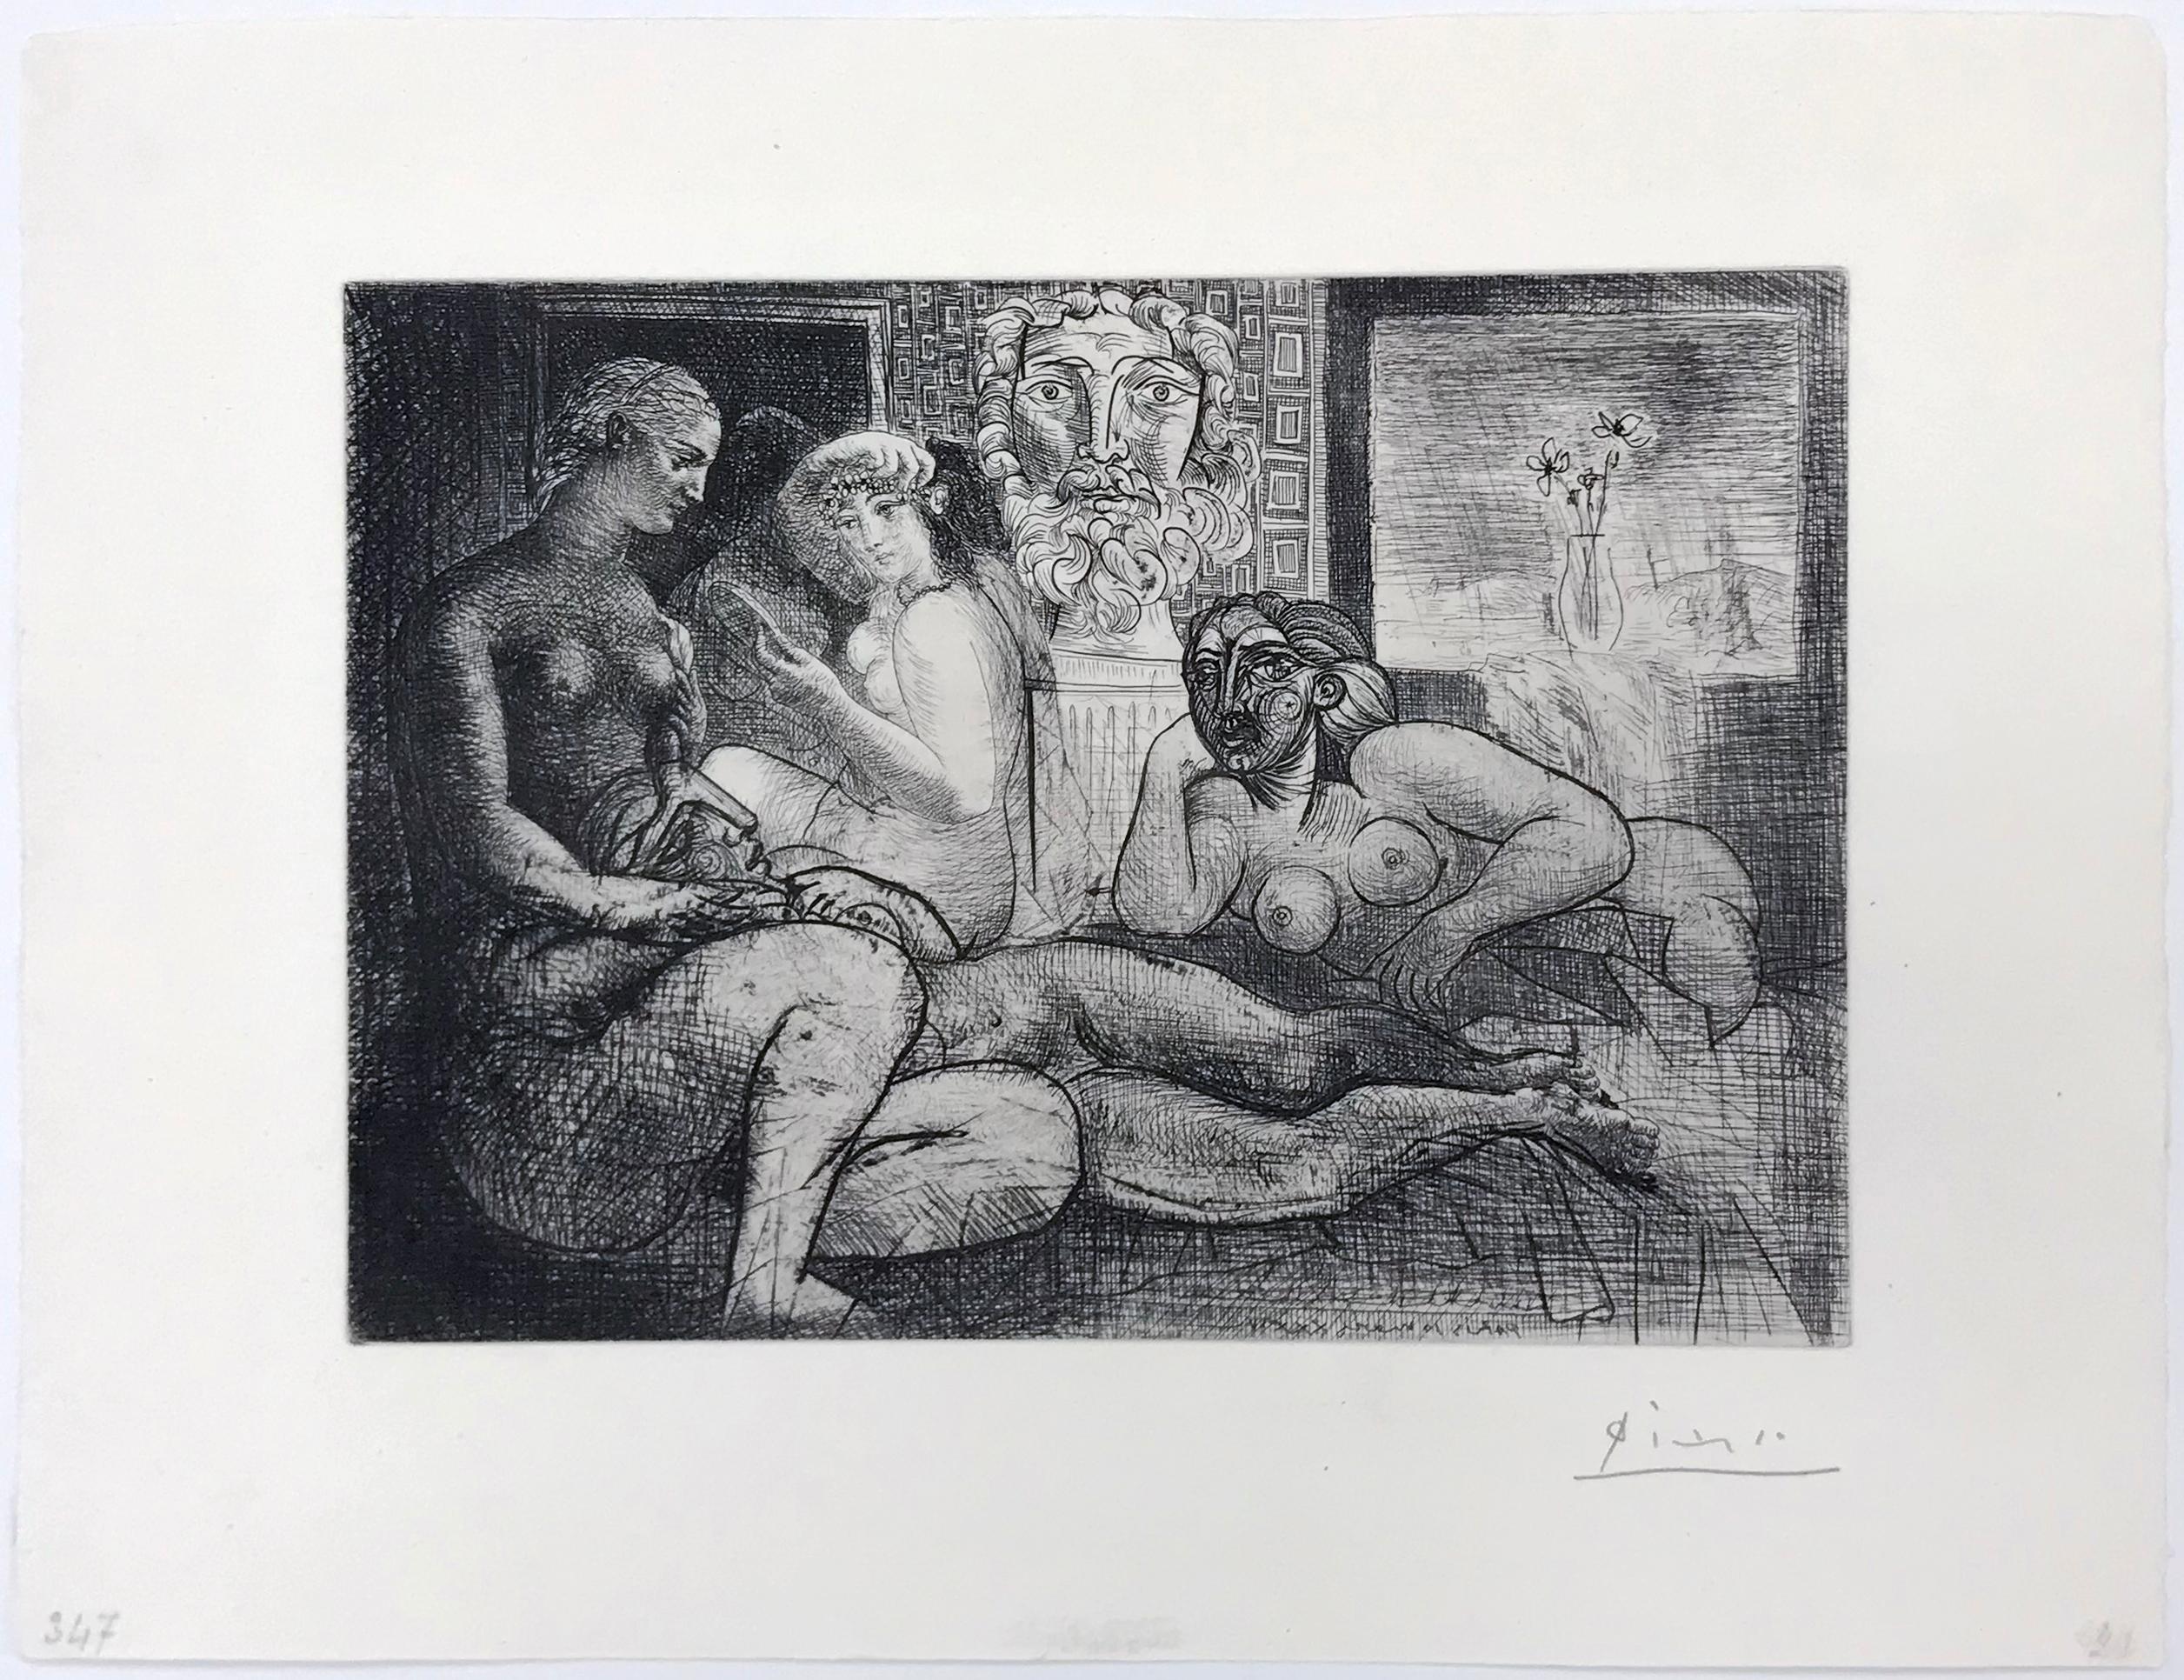 QUATRE FEMMES NUES ET TETE SCULPTEE (BLOCH 219) - Print by Pablo Picasso